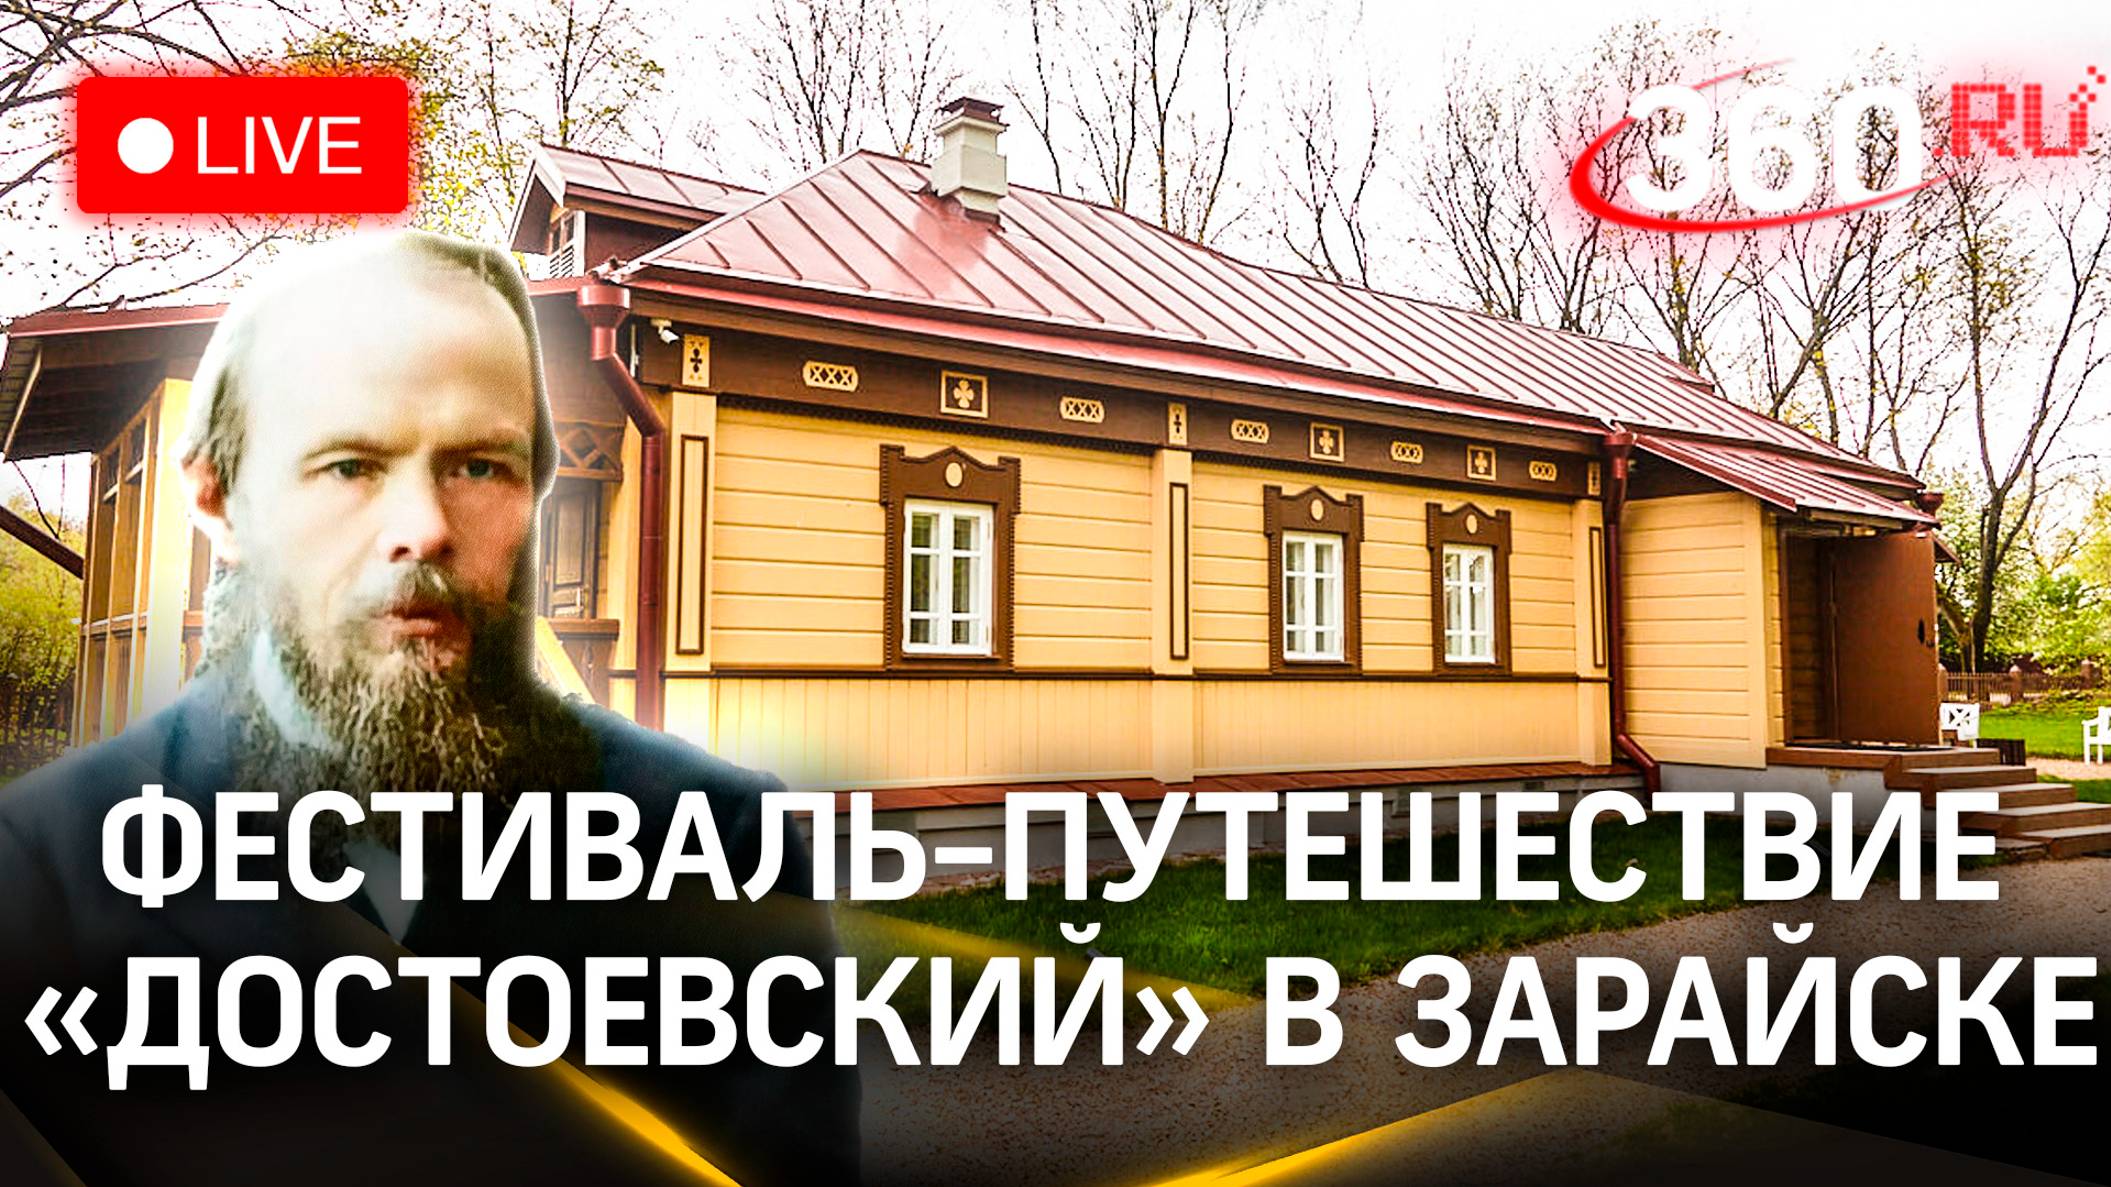 Фестиваль-путешествие «Достоевский» в Зарайске | Прямая трансляция